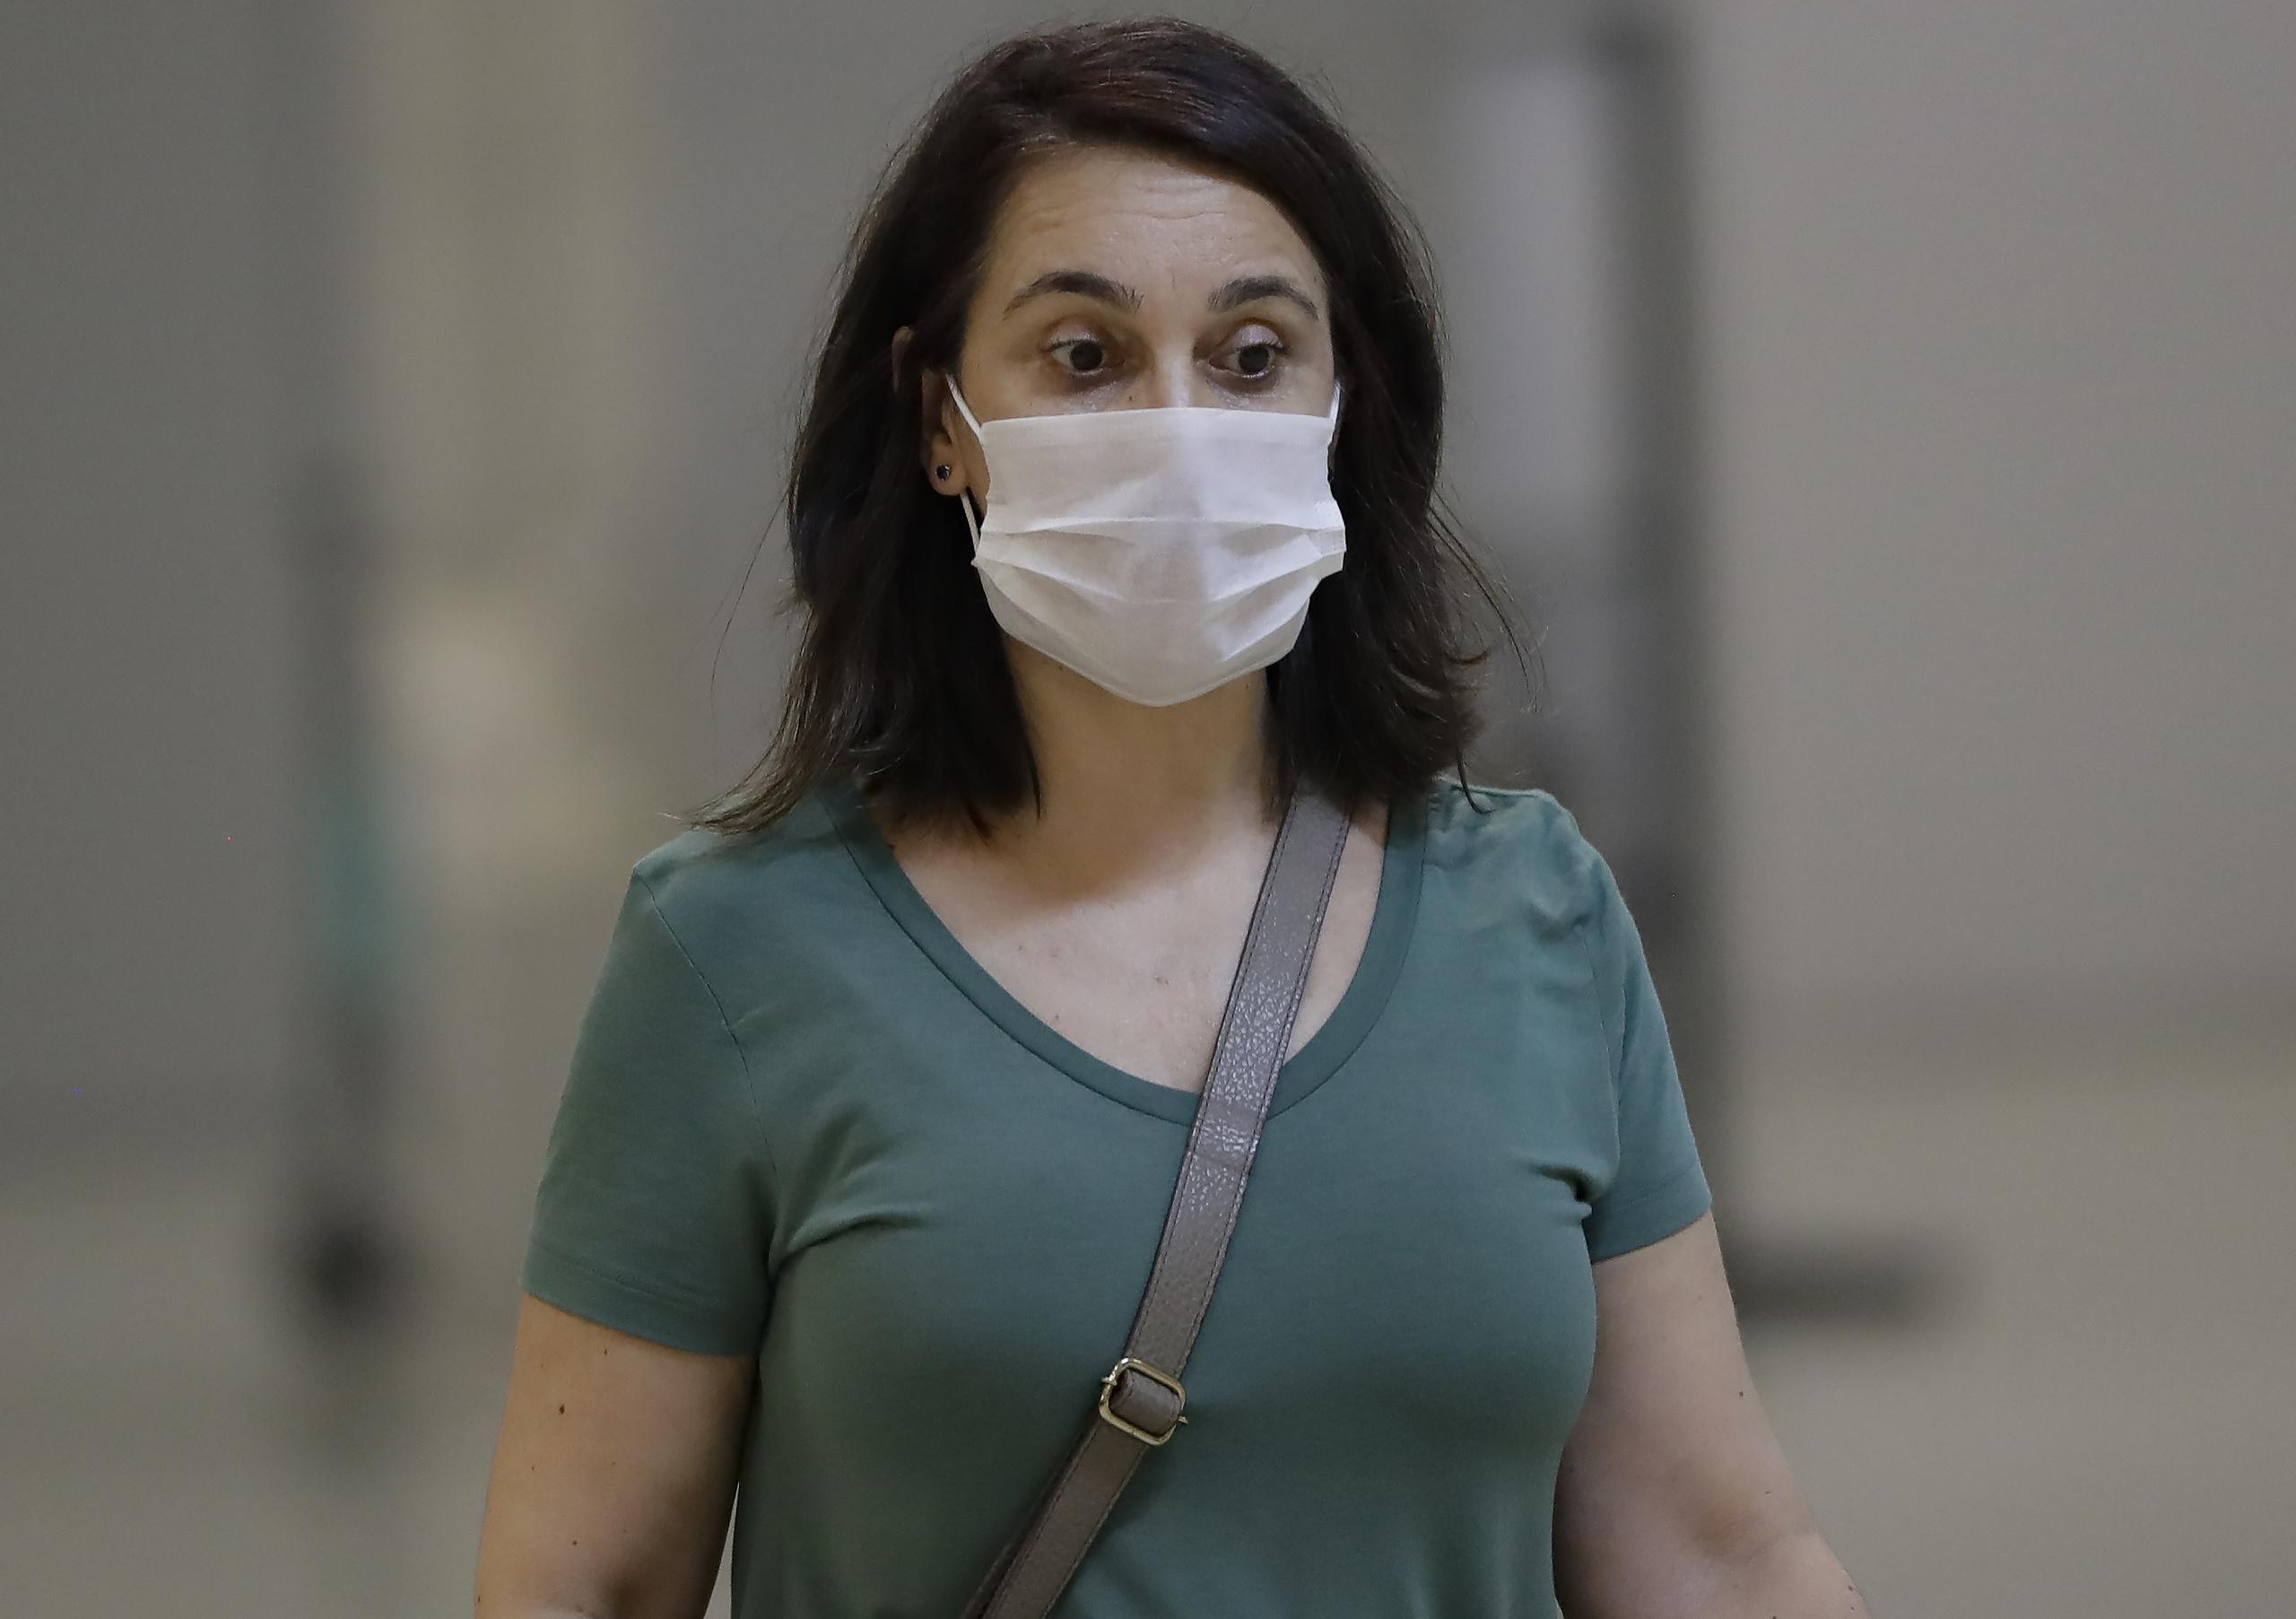 Una pasajera que usa una máscara como precaución contra la propagación del nuevo coronavirus COVID-19 llega al Aeropuerto Internacional de Sao Paulo en Brasil.